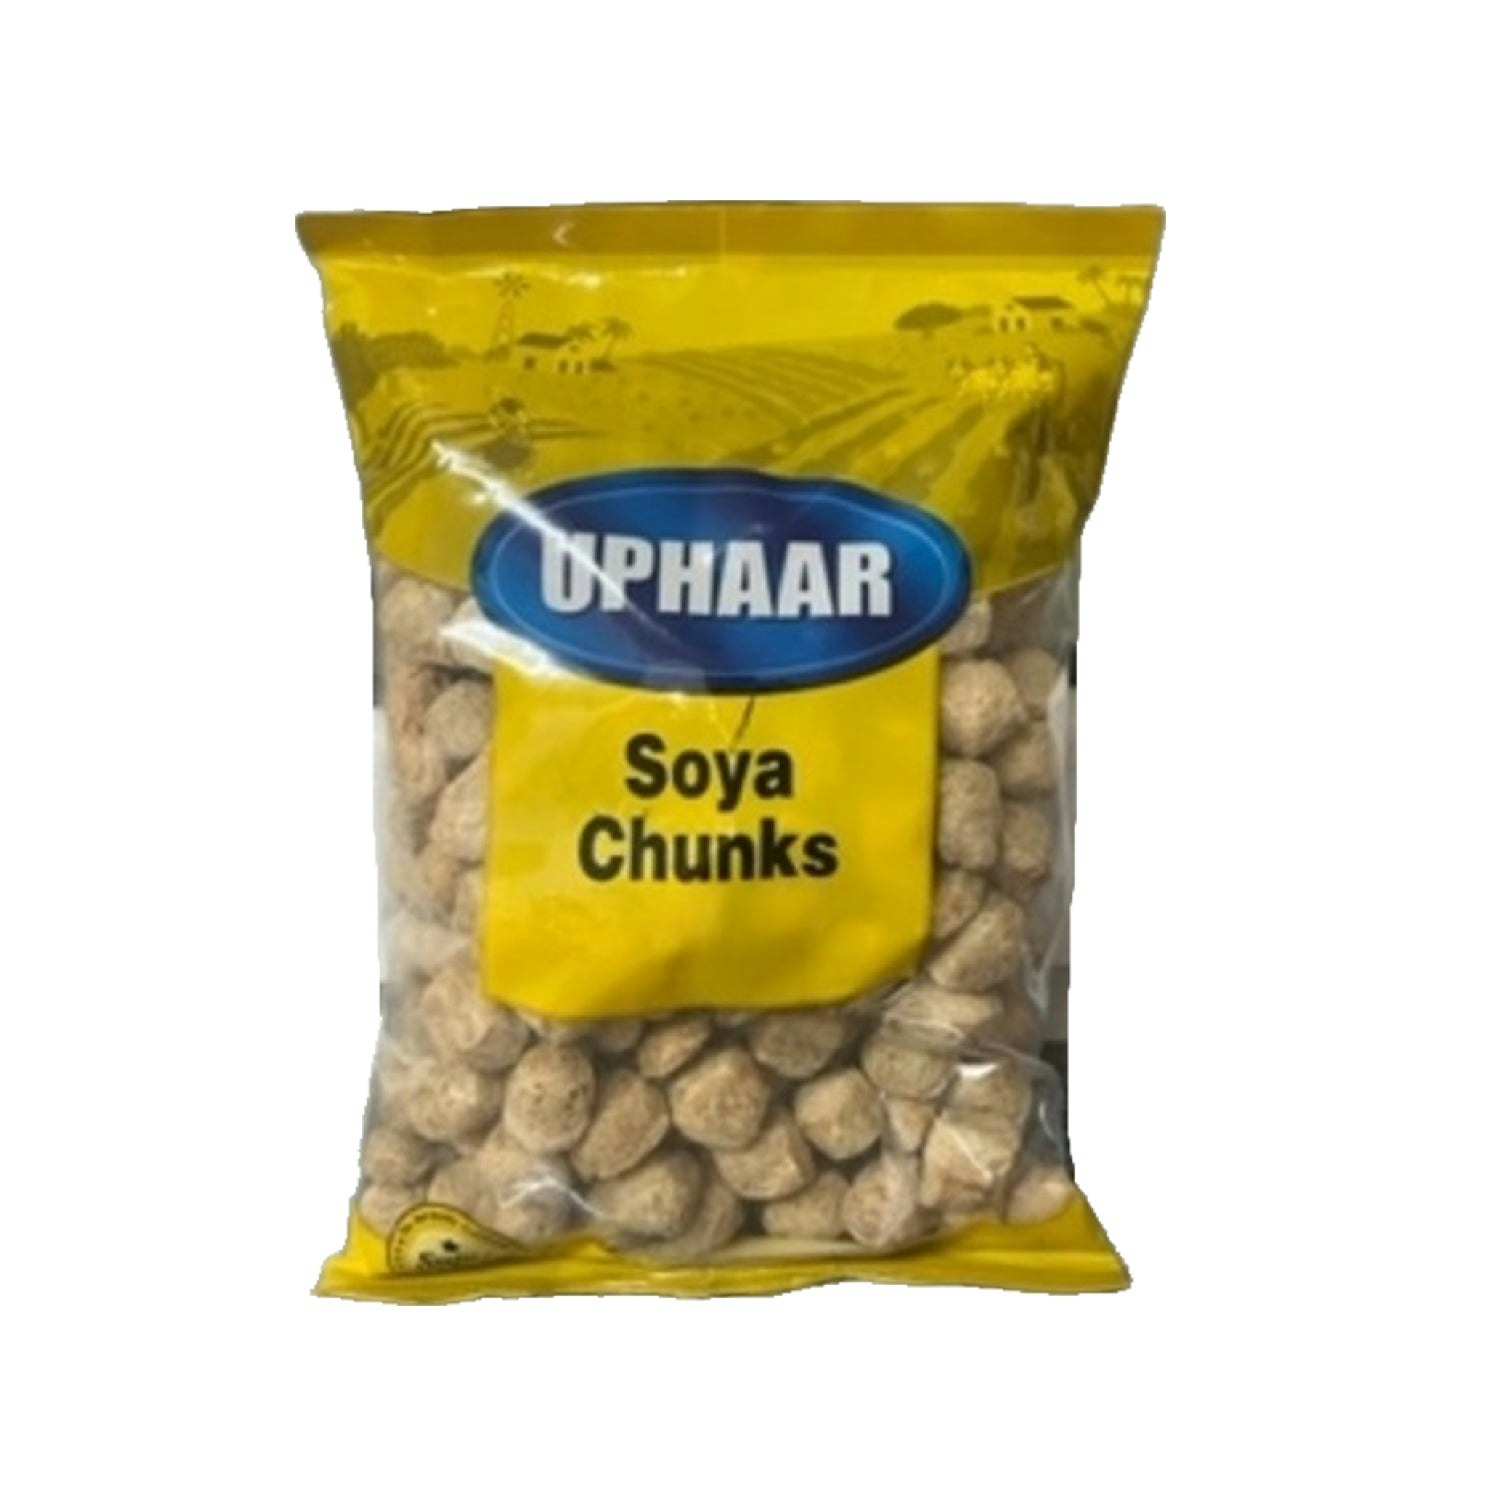 Soya Chunks 300g(Uphaar)